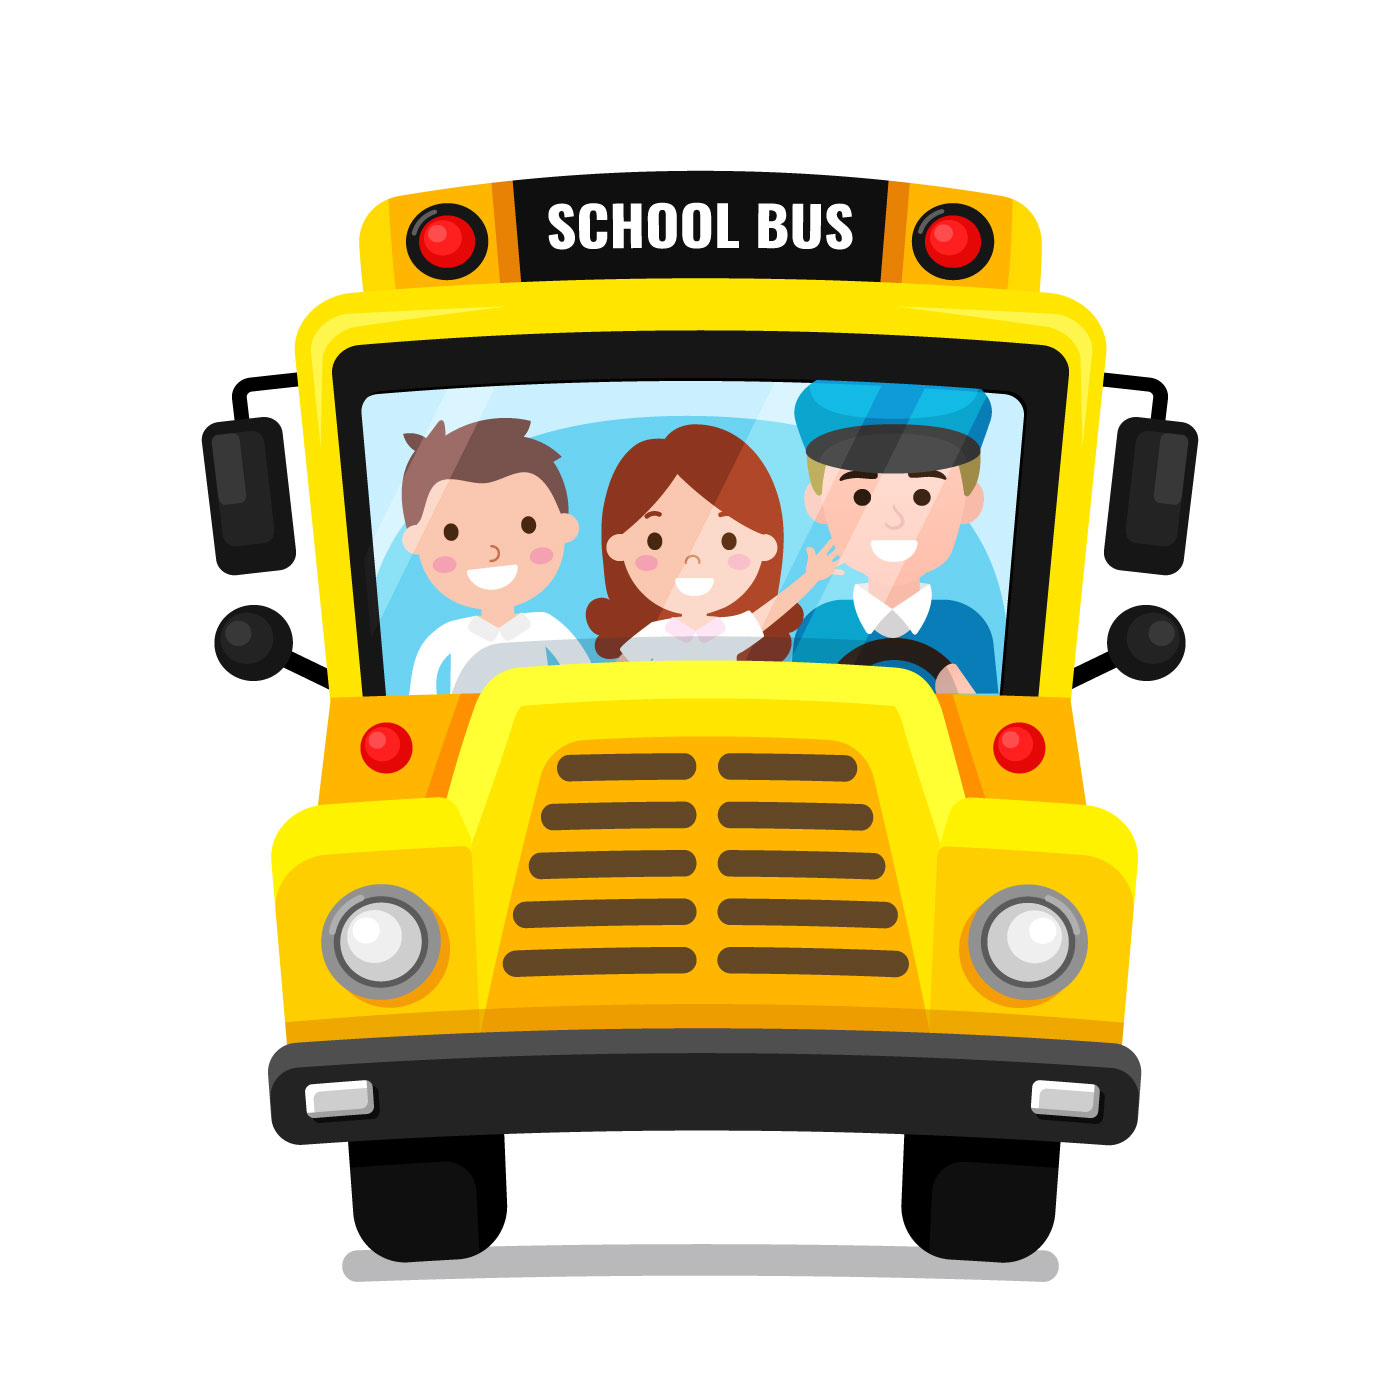 School Bus Front View Vector - Download Free Vectors ...